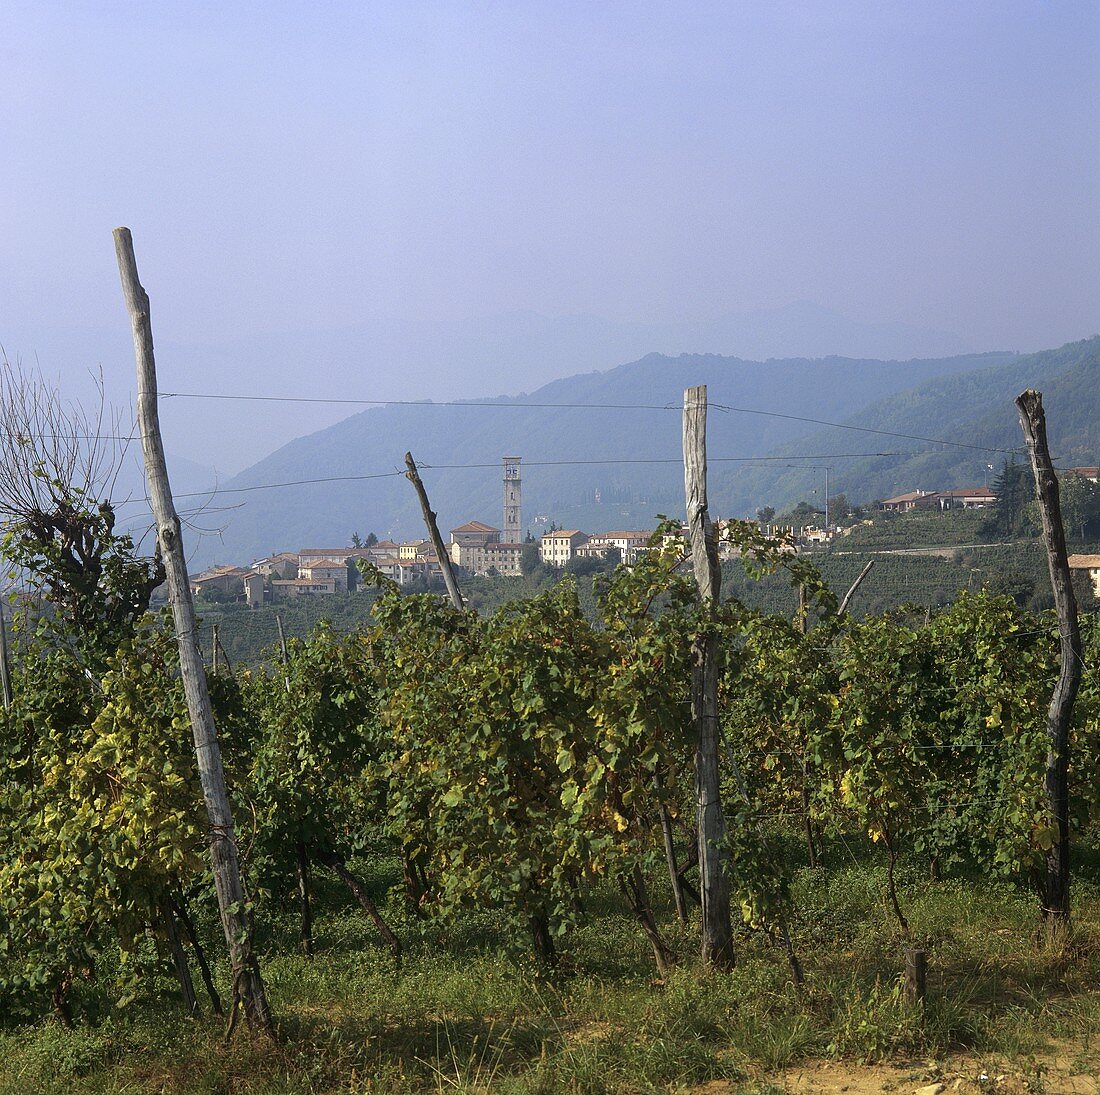 Blick über Weinberg auf Santo Stefano, Veneto, Italien